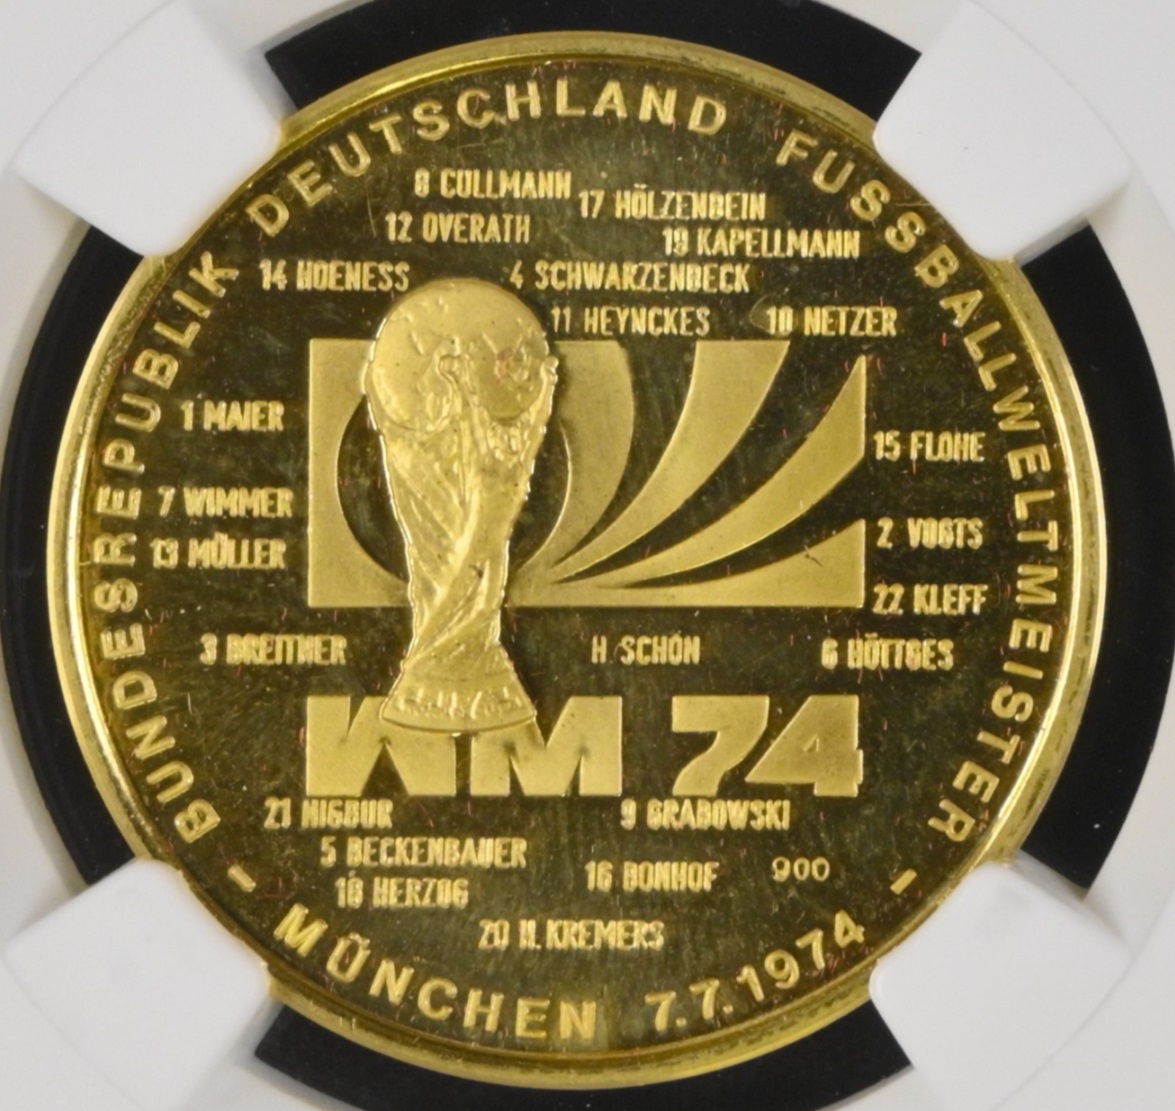  Deutschland Goldmedaille 1974 | NGC PF67 ULTRA CAMEO TOP POP | FiFa Fußball Weltmeisterschaft   